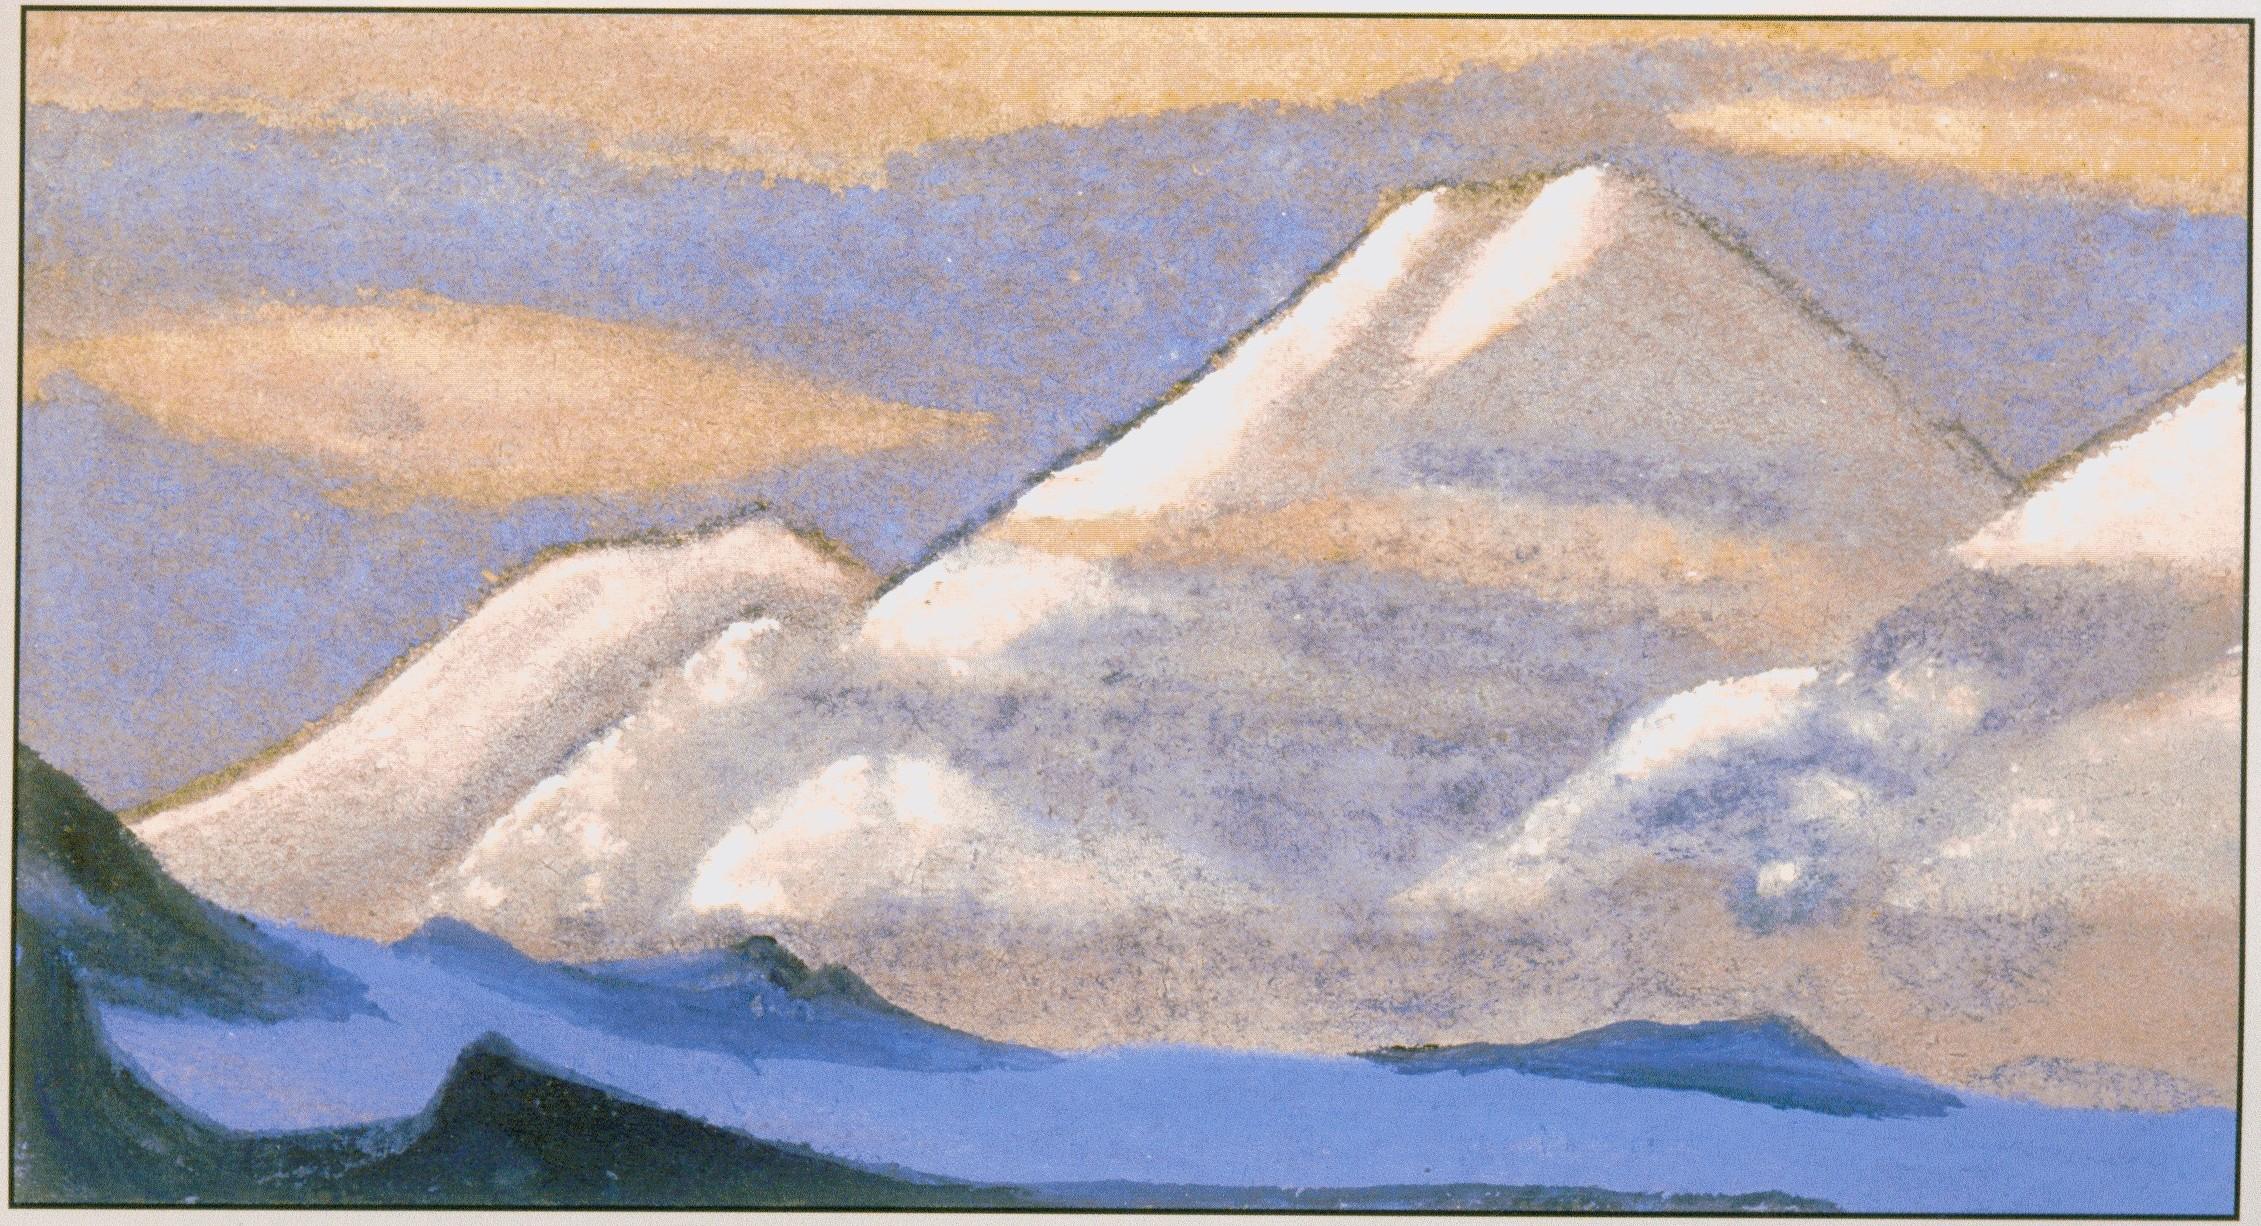 Н.К.Рерих. Гималаи. # 84 [Гималаи [Снежные пирамиды]]. 1946